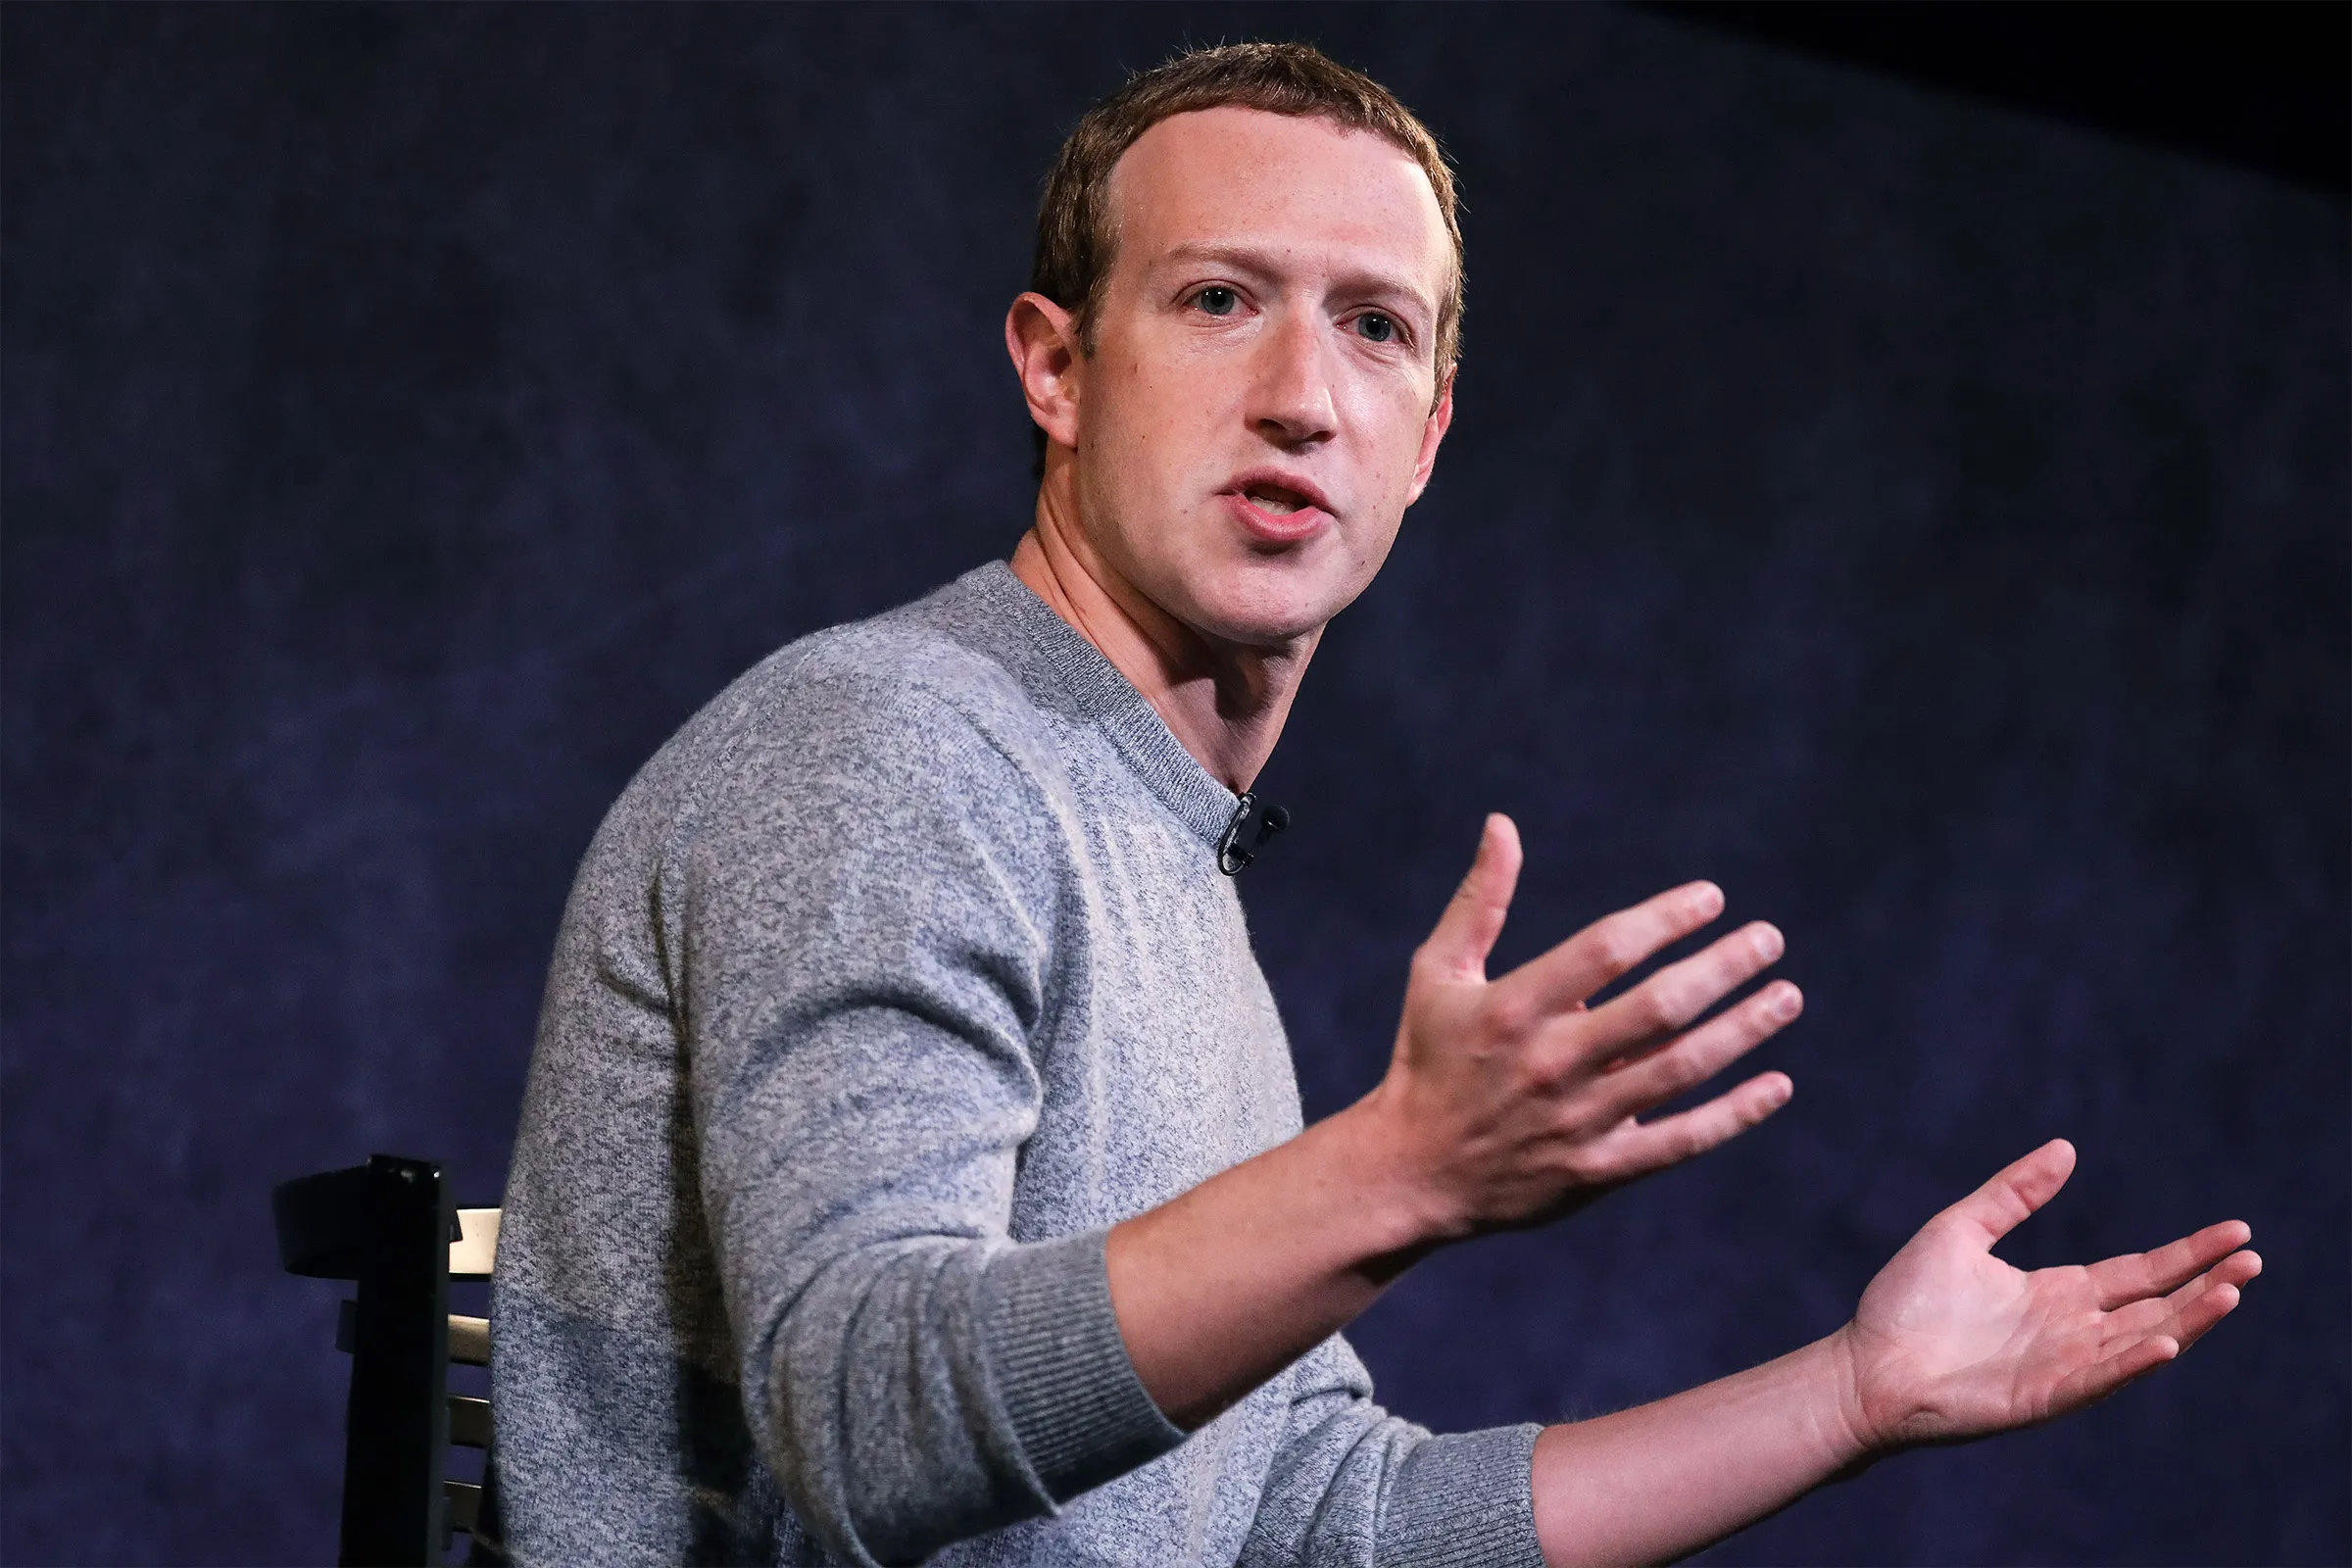 ประวัติ Mark Zuckerberg ผู้สร้างแพลตฟอร์ม Facebook ยอดฮิตที่สุดในโลก